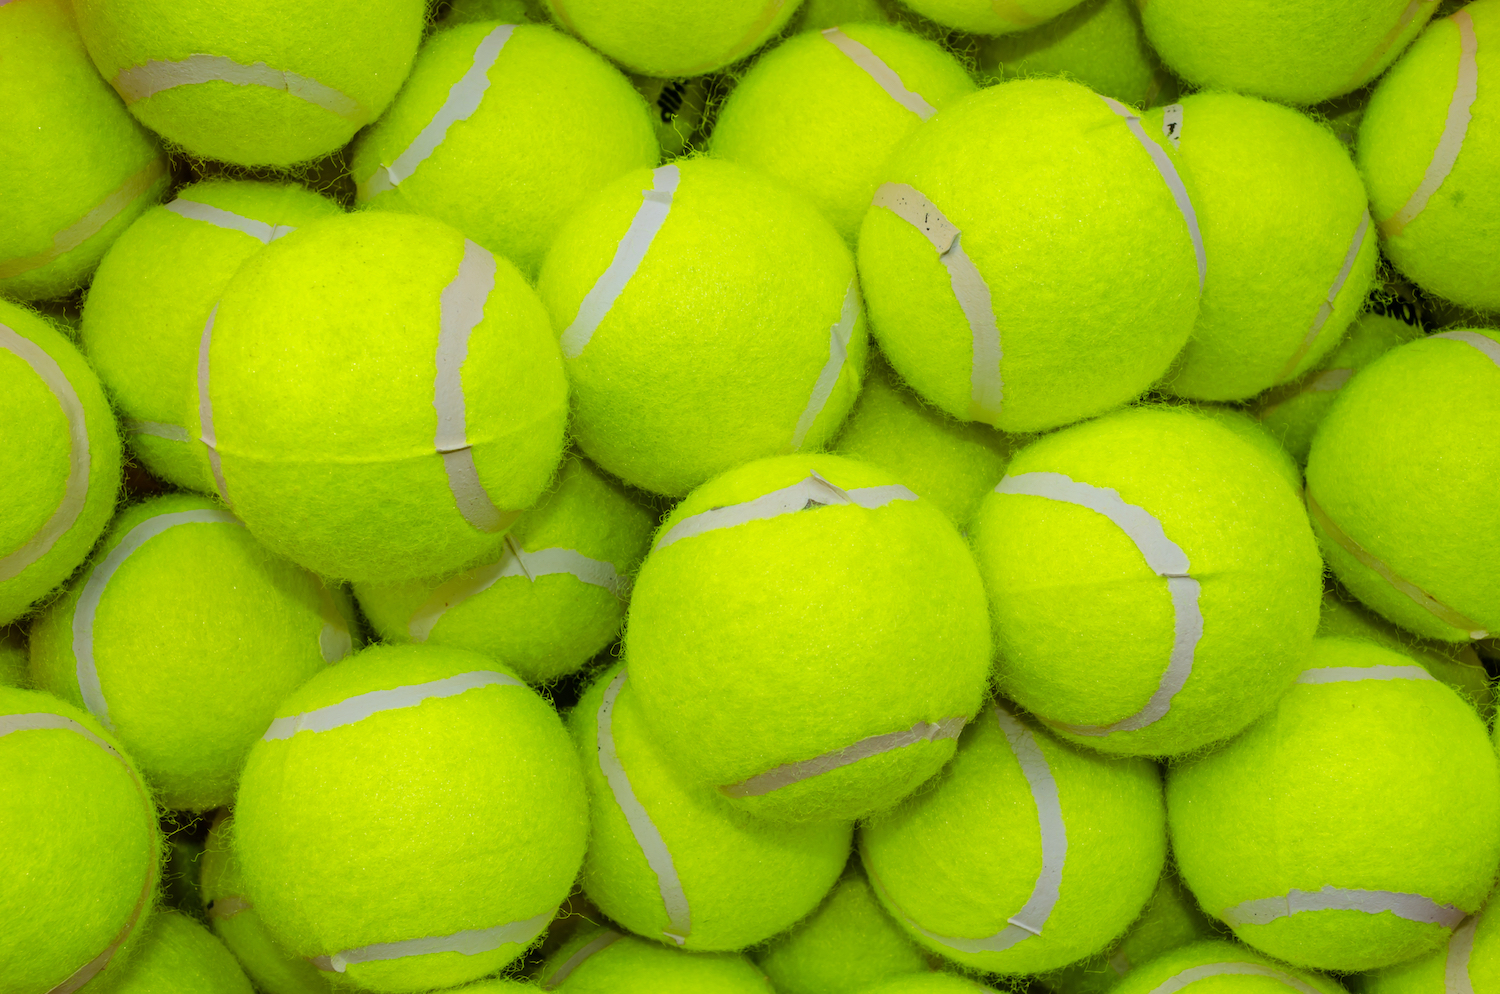 En estimant combien d’arrangements différents sont possibles pour un système composé de 128 balles de tennis, les chercheurs espèrent aider à résoudre des problèmes de physique de la matière granulaire autrement plus importants, comme la prédiction des mouvements d’avalanche, par exemple. © Wuttichai jantarak, Shutterstock